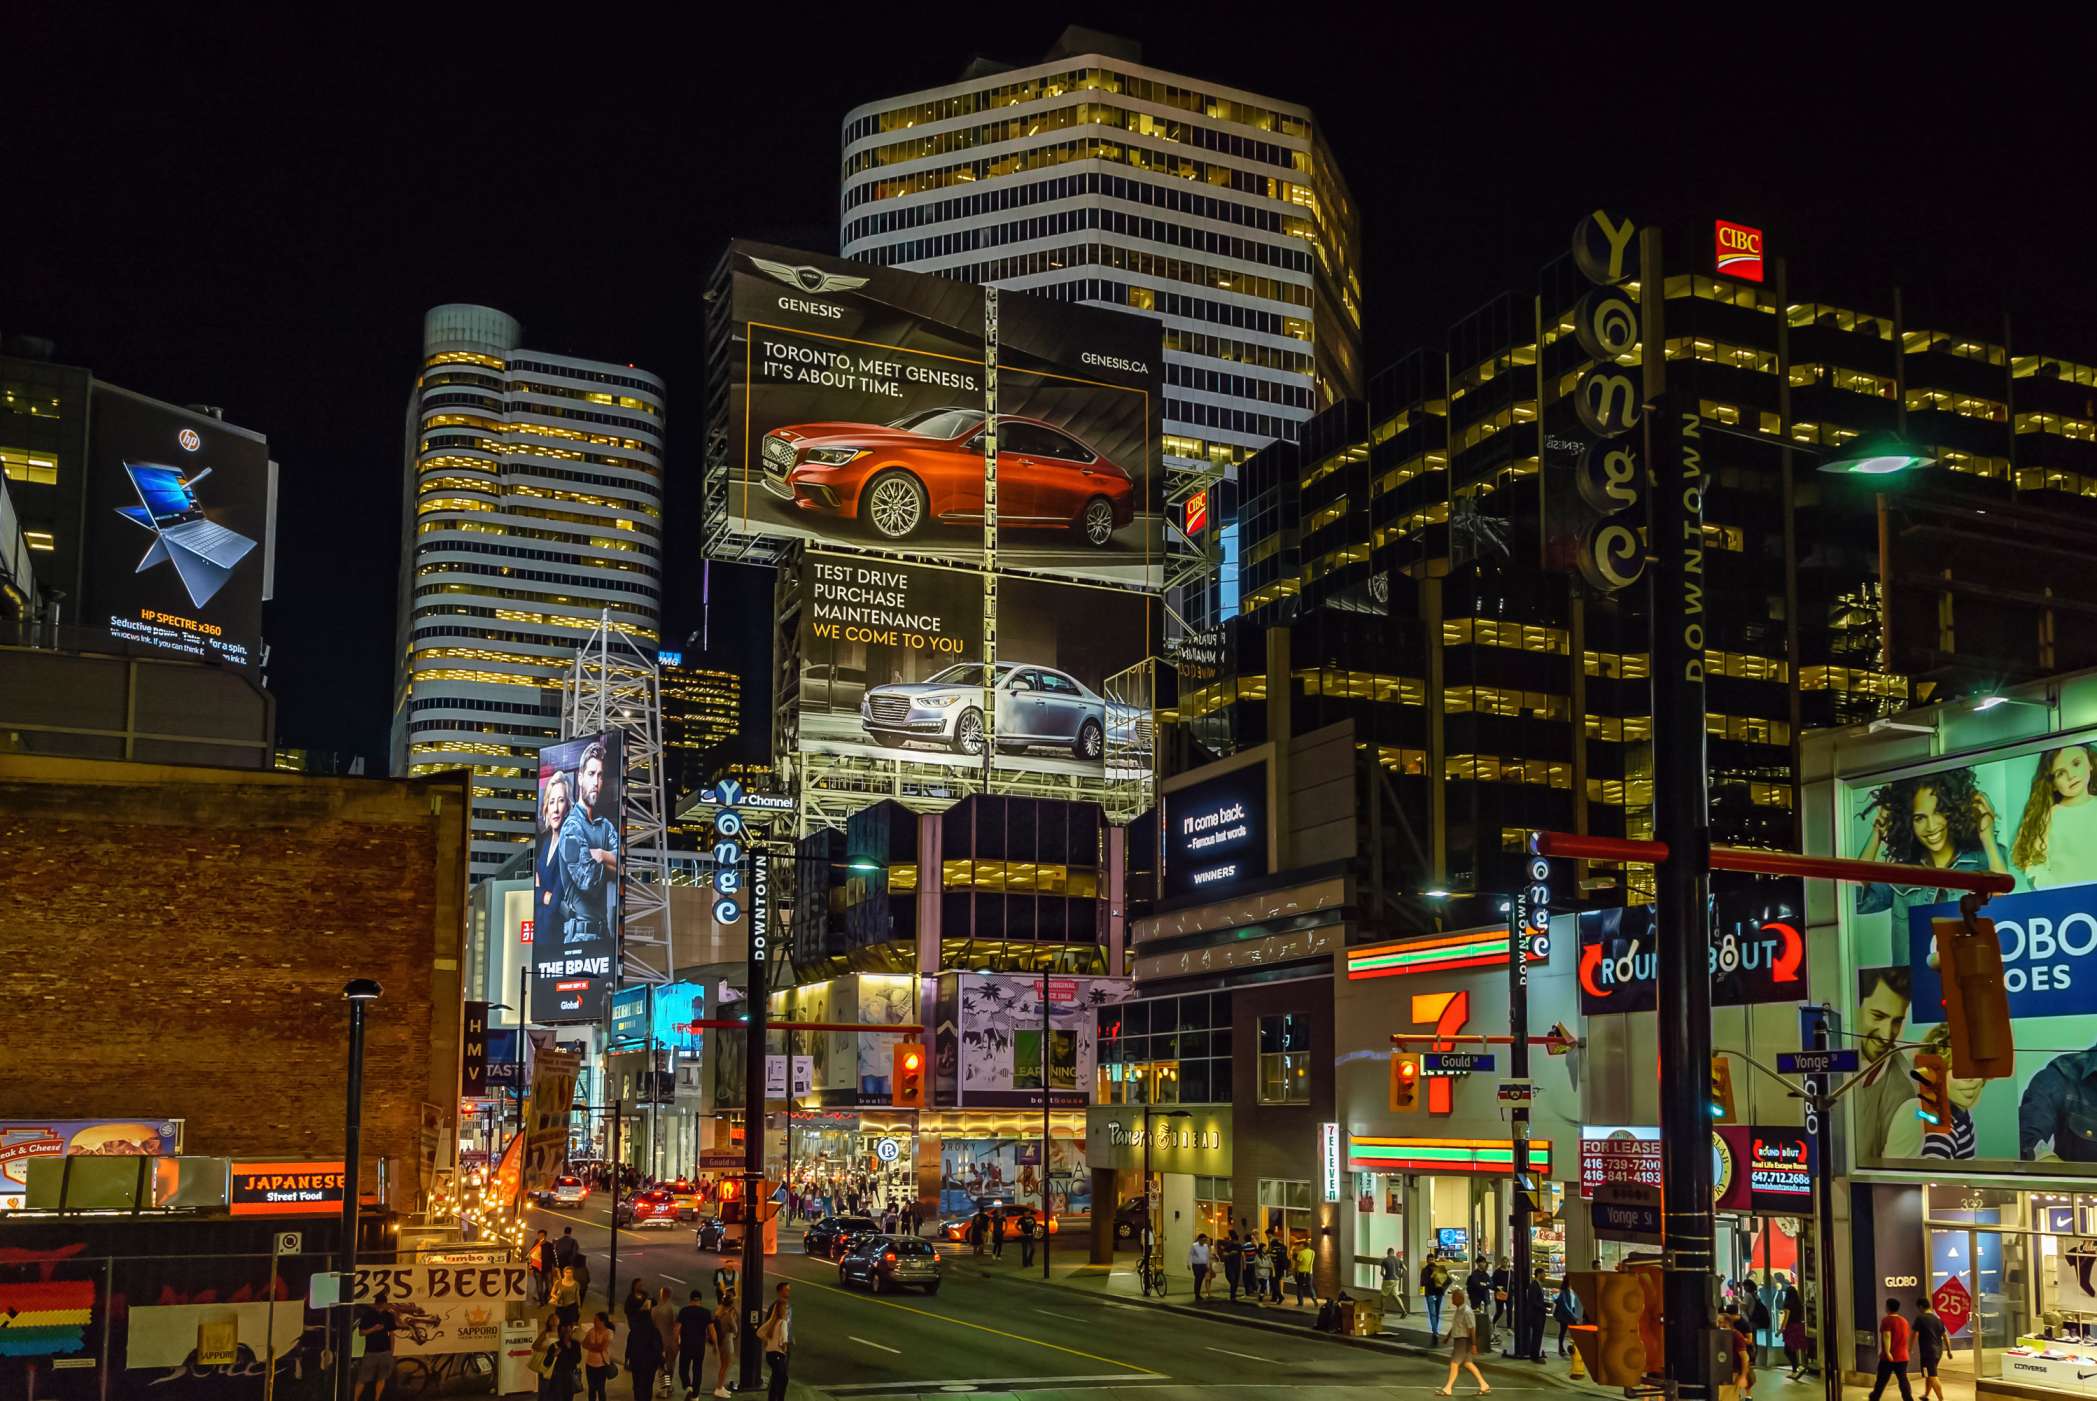 Vue de rue du centre-ville de Toronto et de ses enseignes lumineuses après la tombée de la nuit.